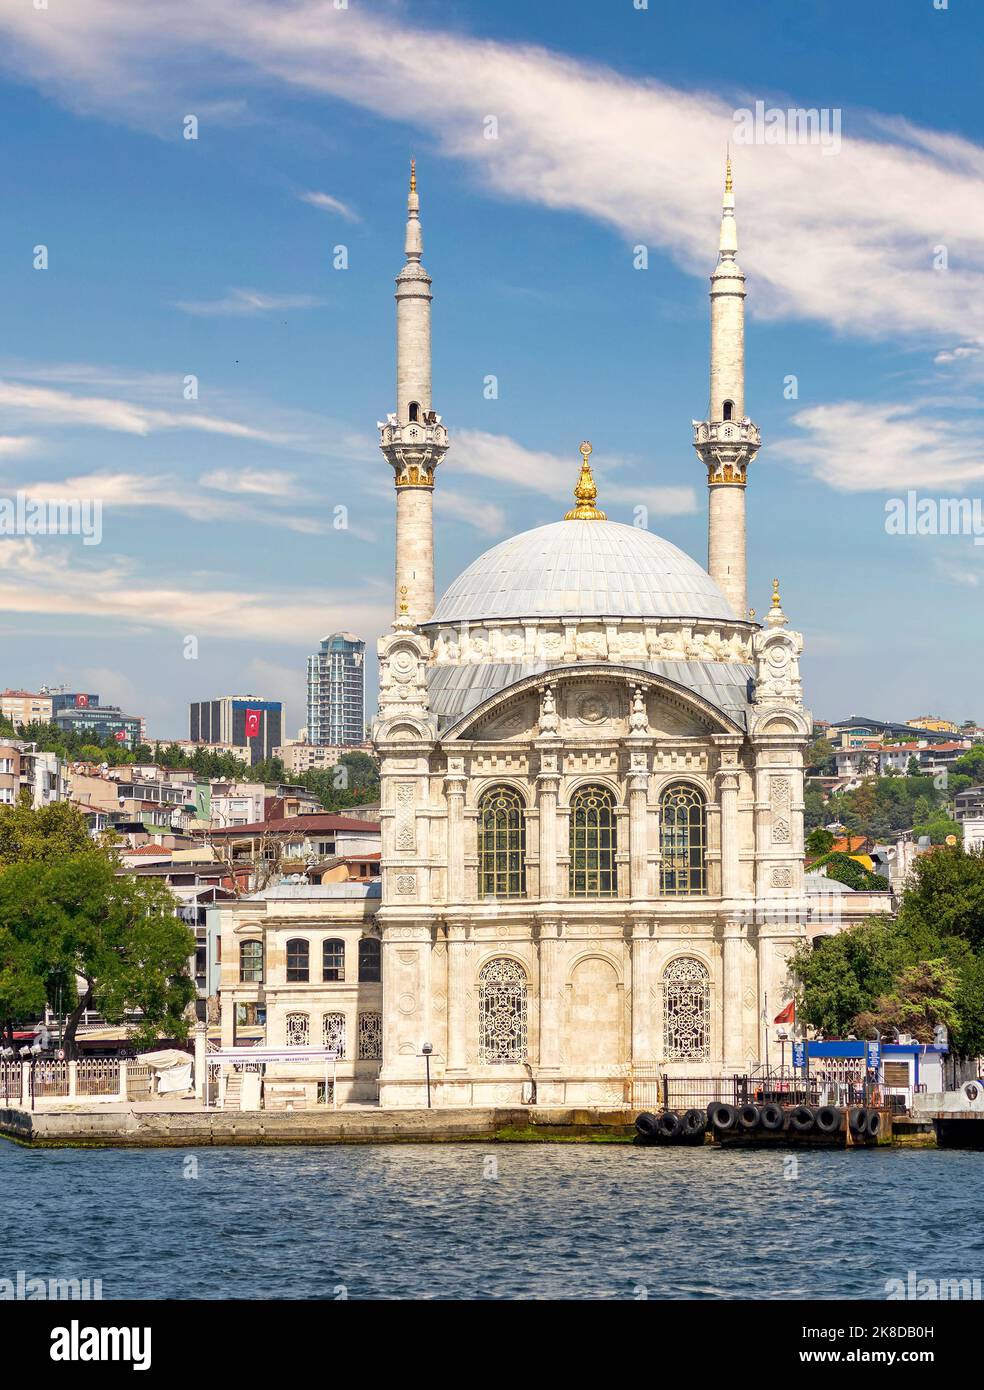 Vista dallo stretto del Bosforo che si affaccia sulla Moschea di Ortakoy, o Ortakoy Camii, nota anche come Buyuk Mecidiye Camii, adatta al lato del mare della piazza del molo di Ortakoy, Istanbul, Turchia Foto Stock